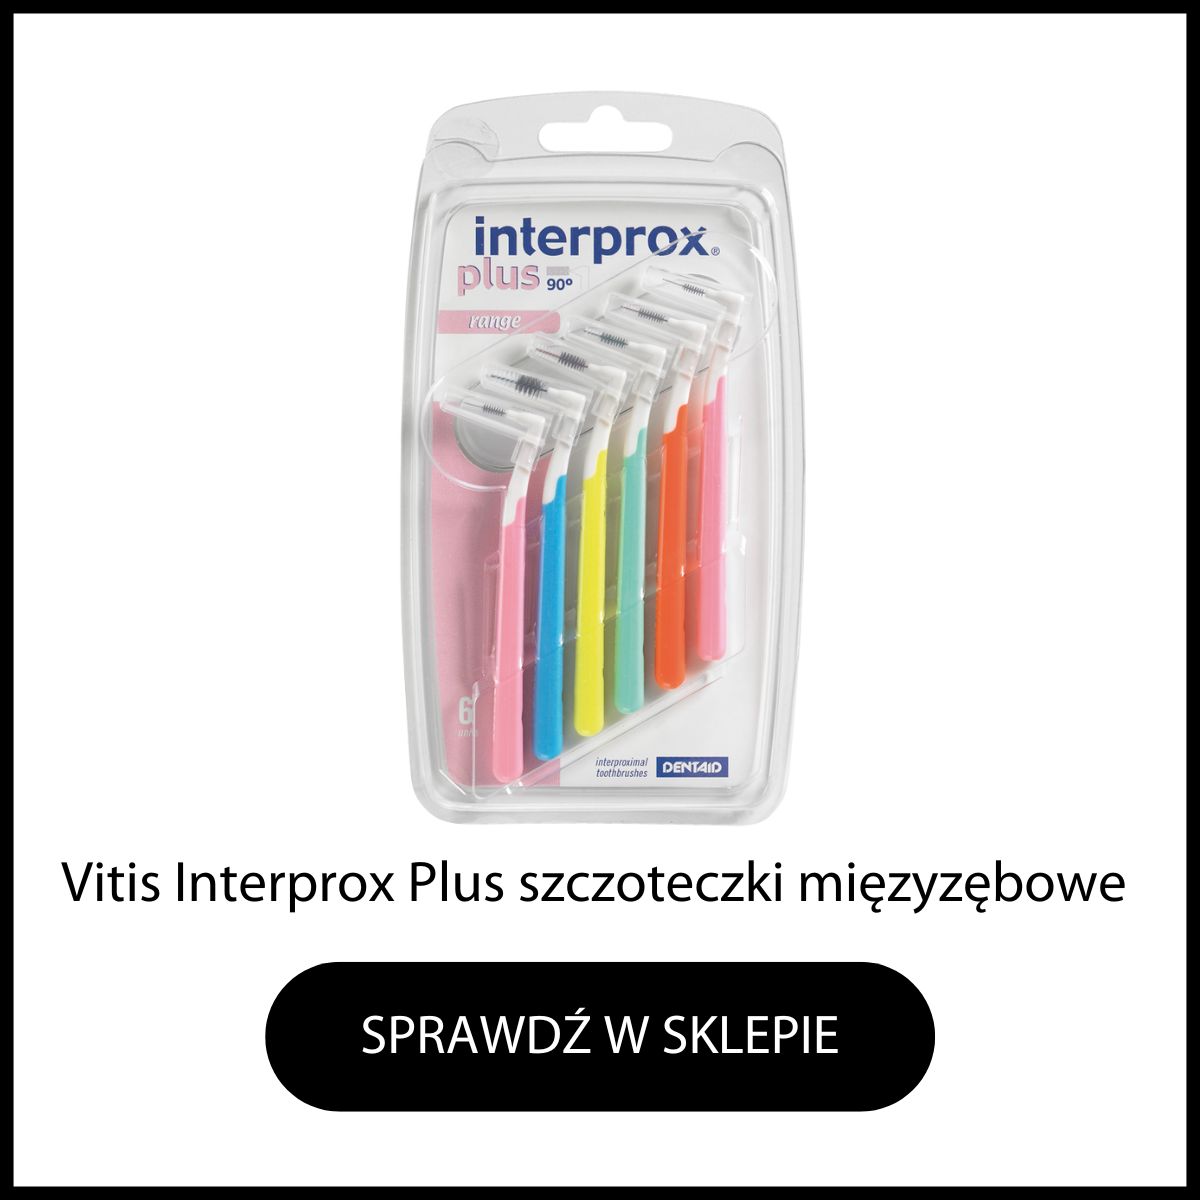 Vitis Interprox Plus szczoteczki miedzyzebowe